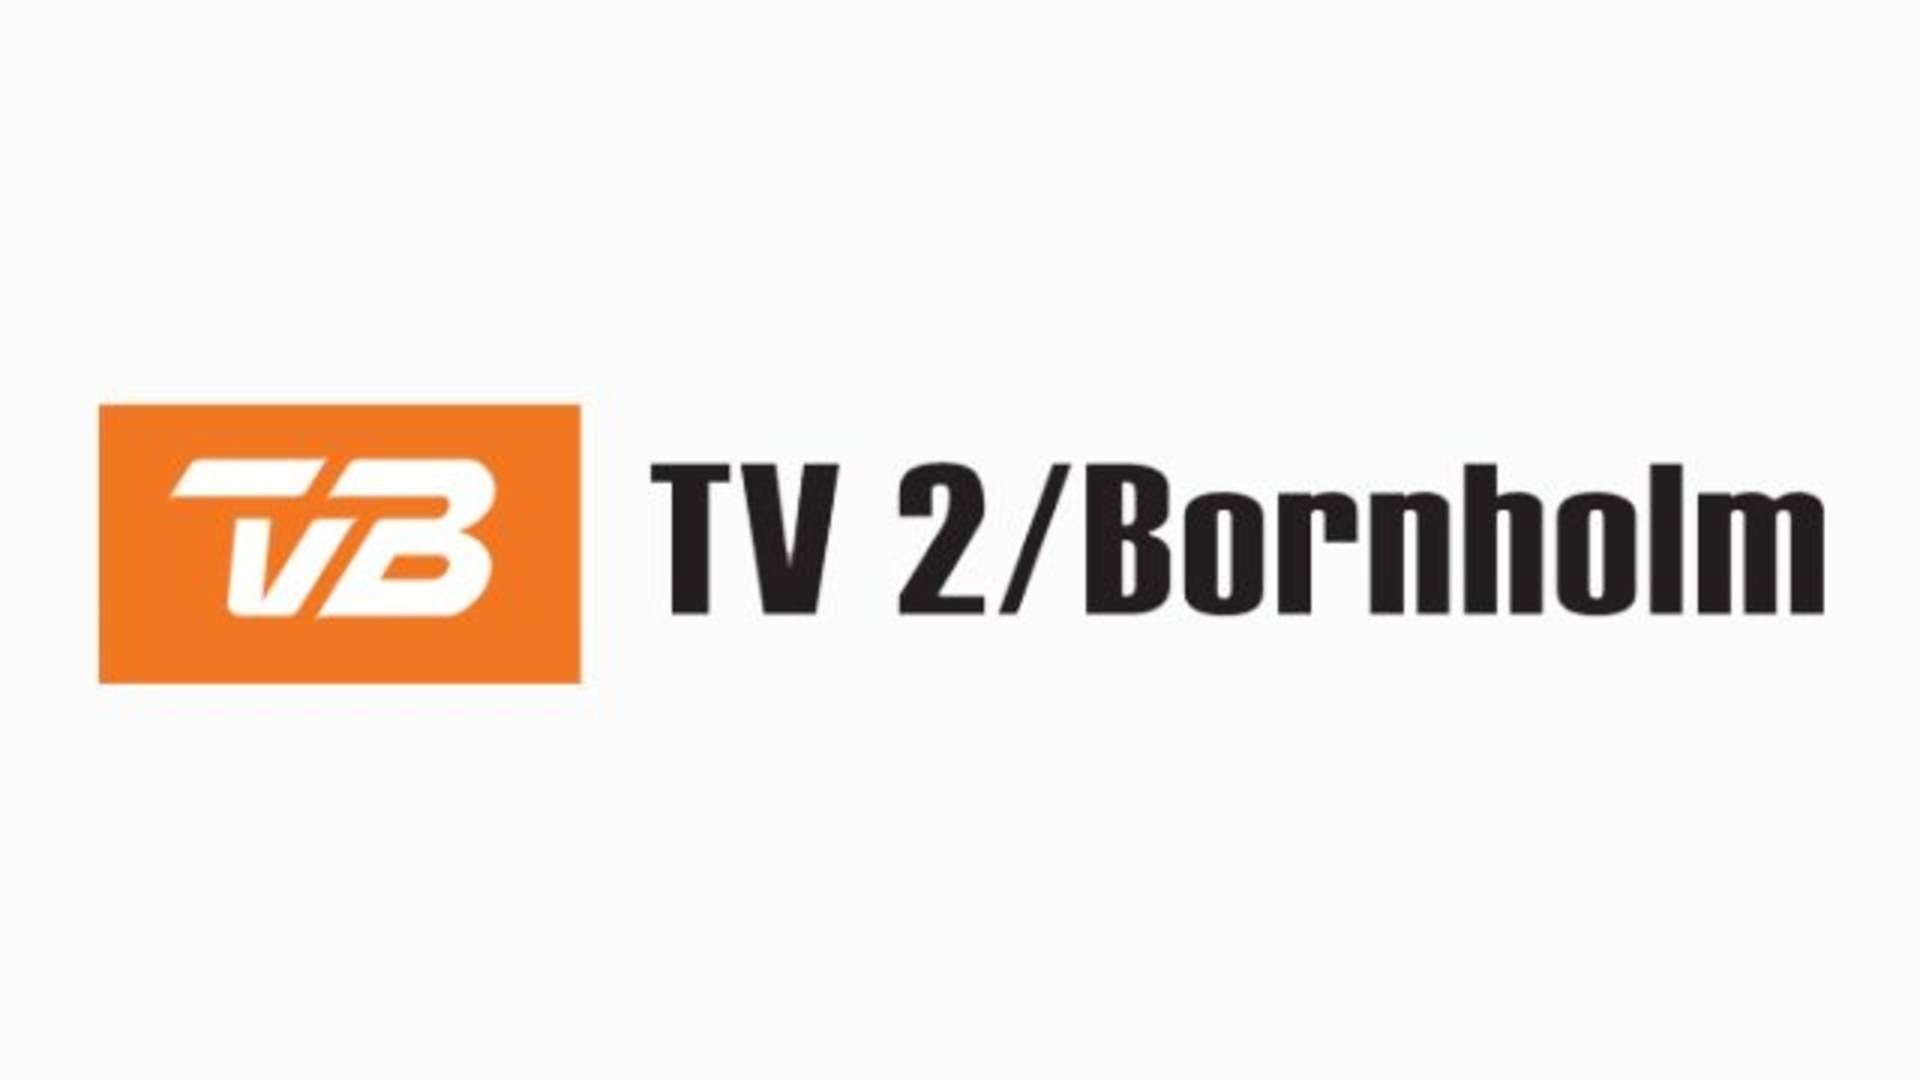 Foto: TV 2 Bornholm